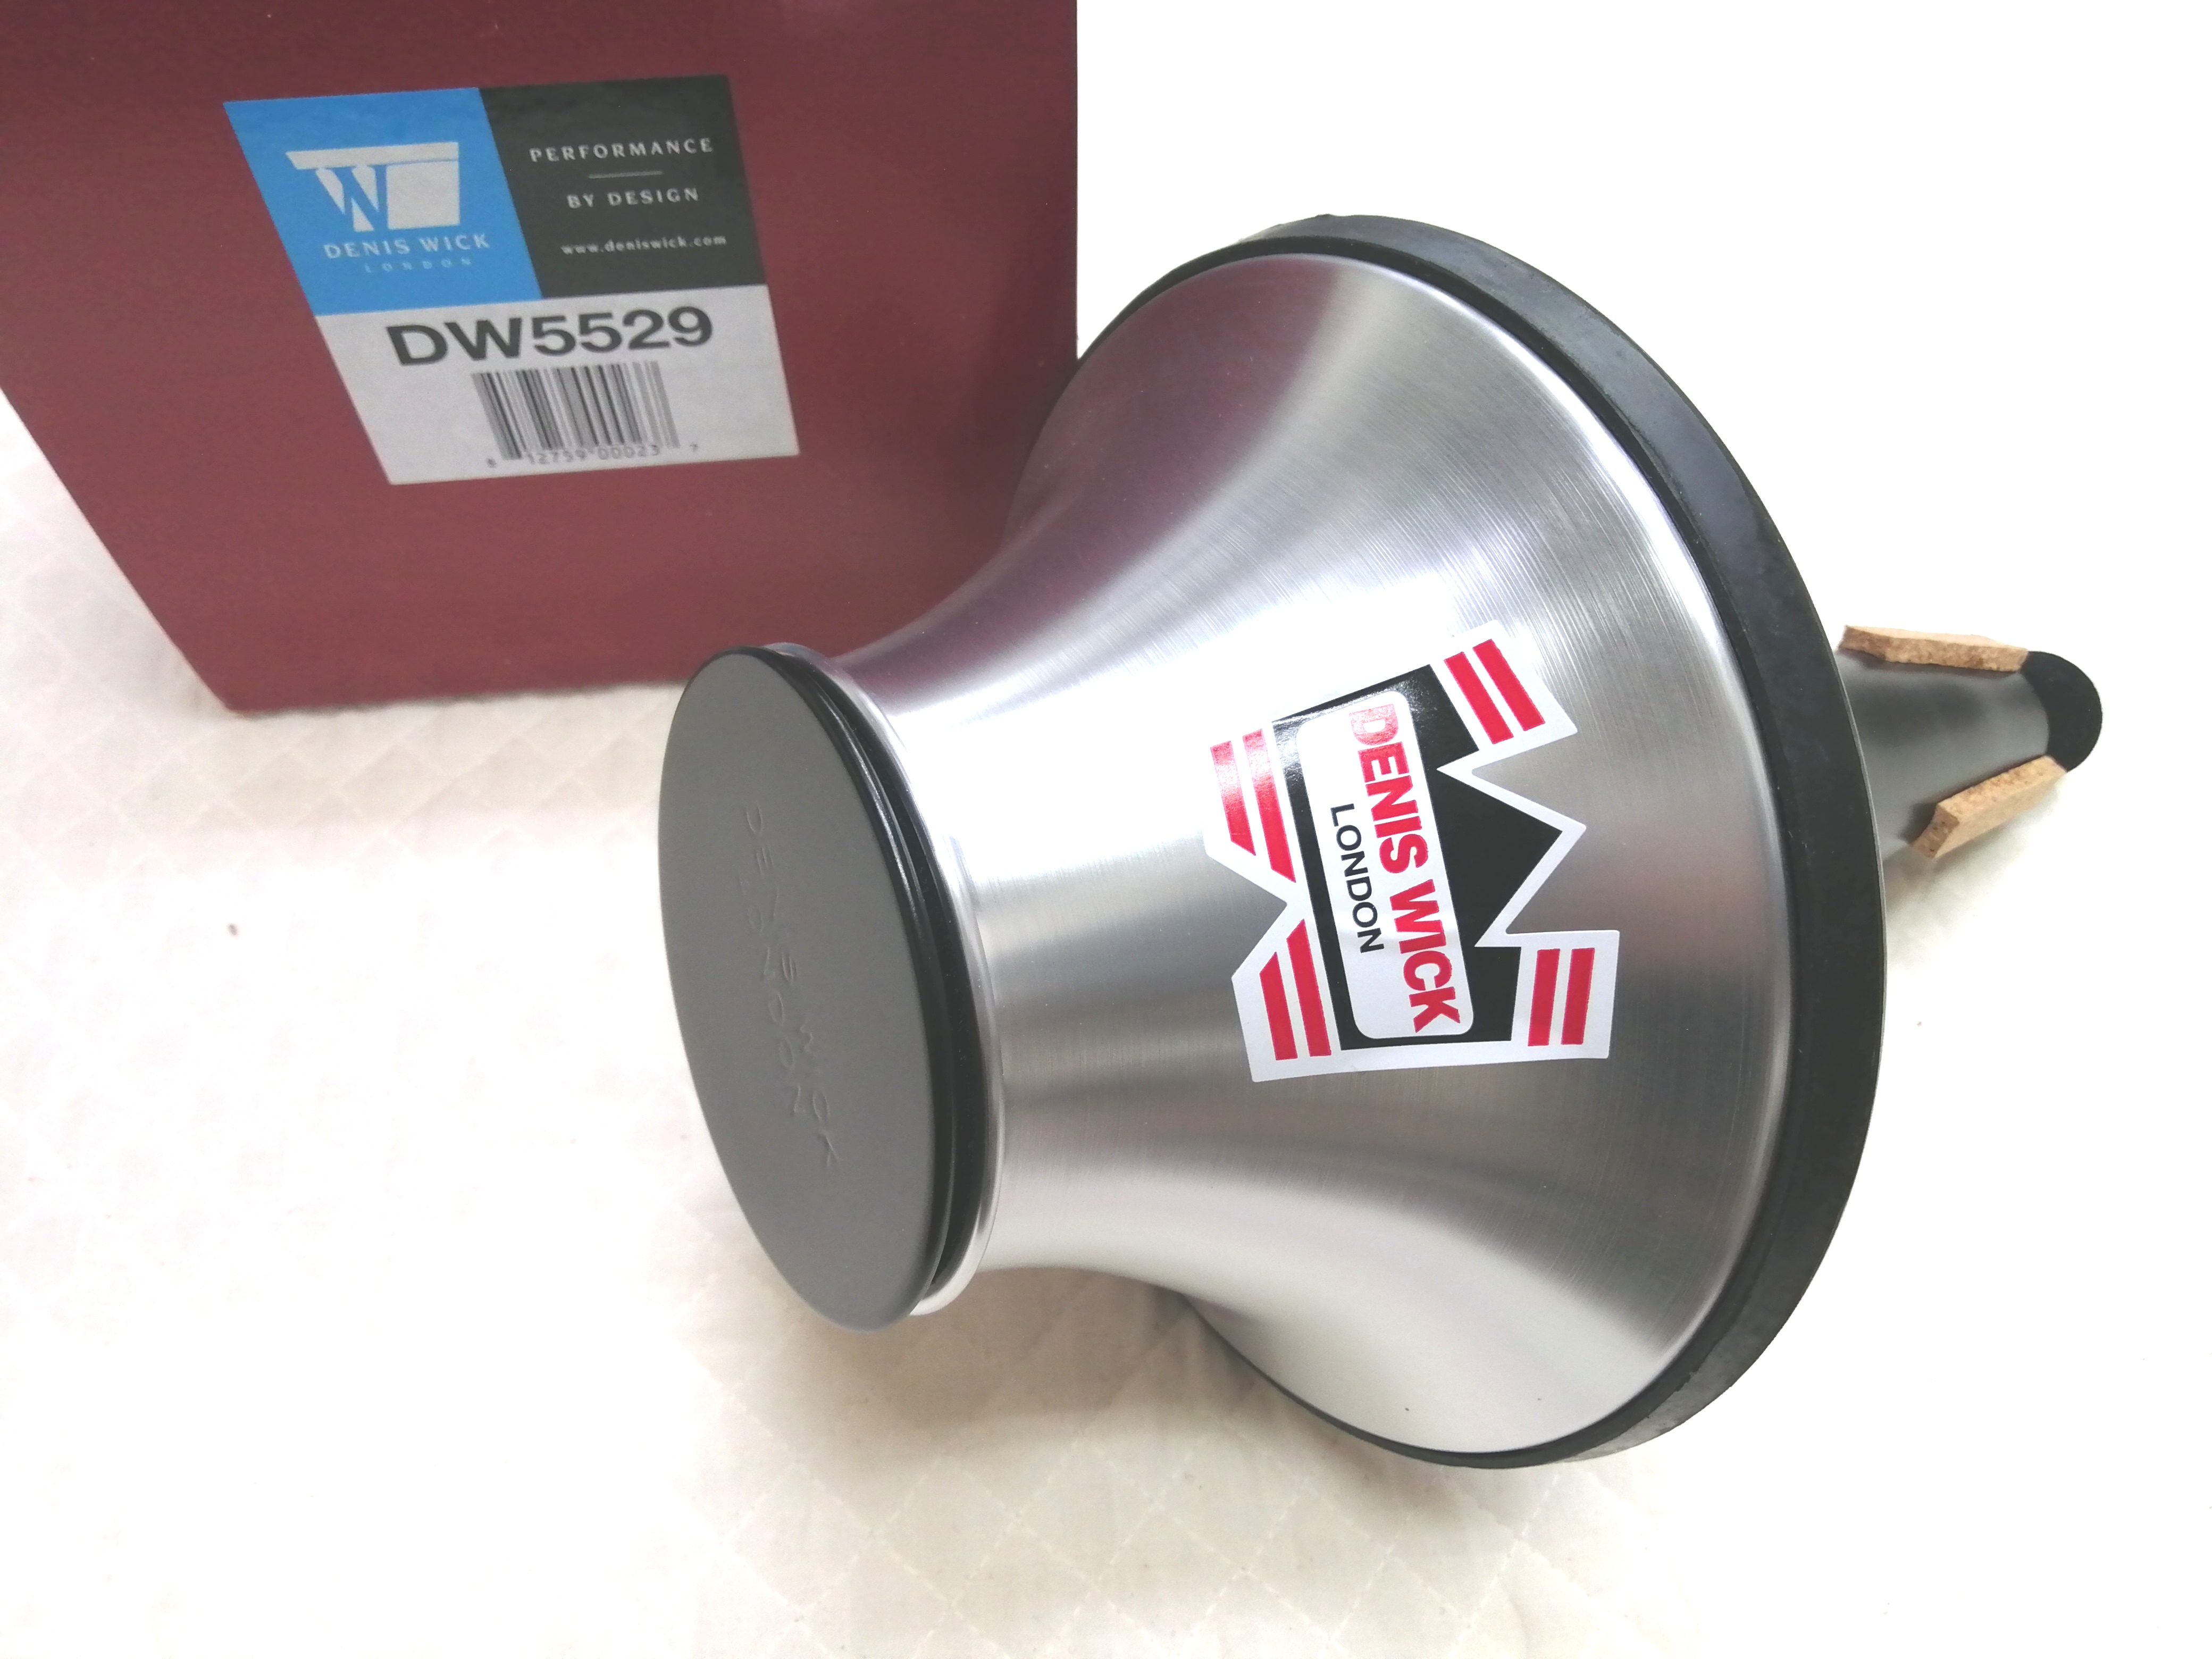 トロンボーンカップミュート DW5529 / 管楽器専門店ヴェリバ (valoir